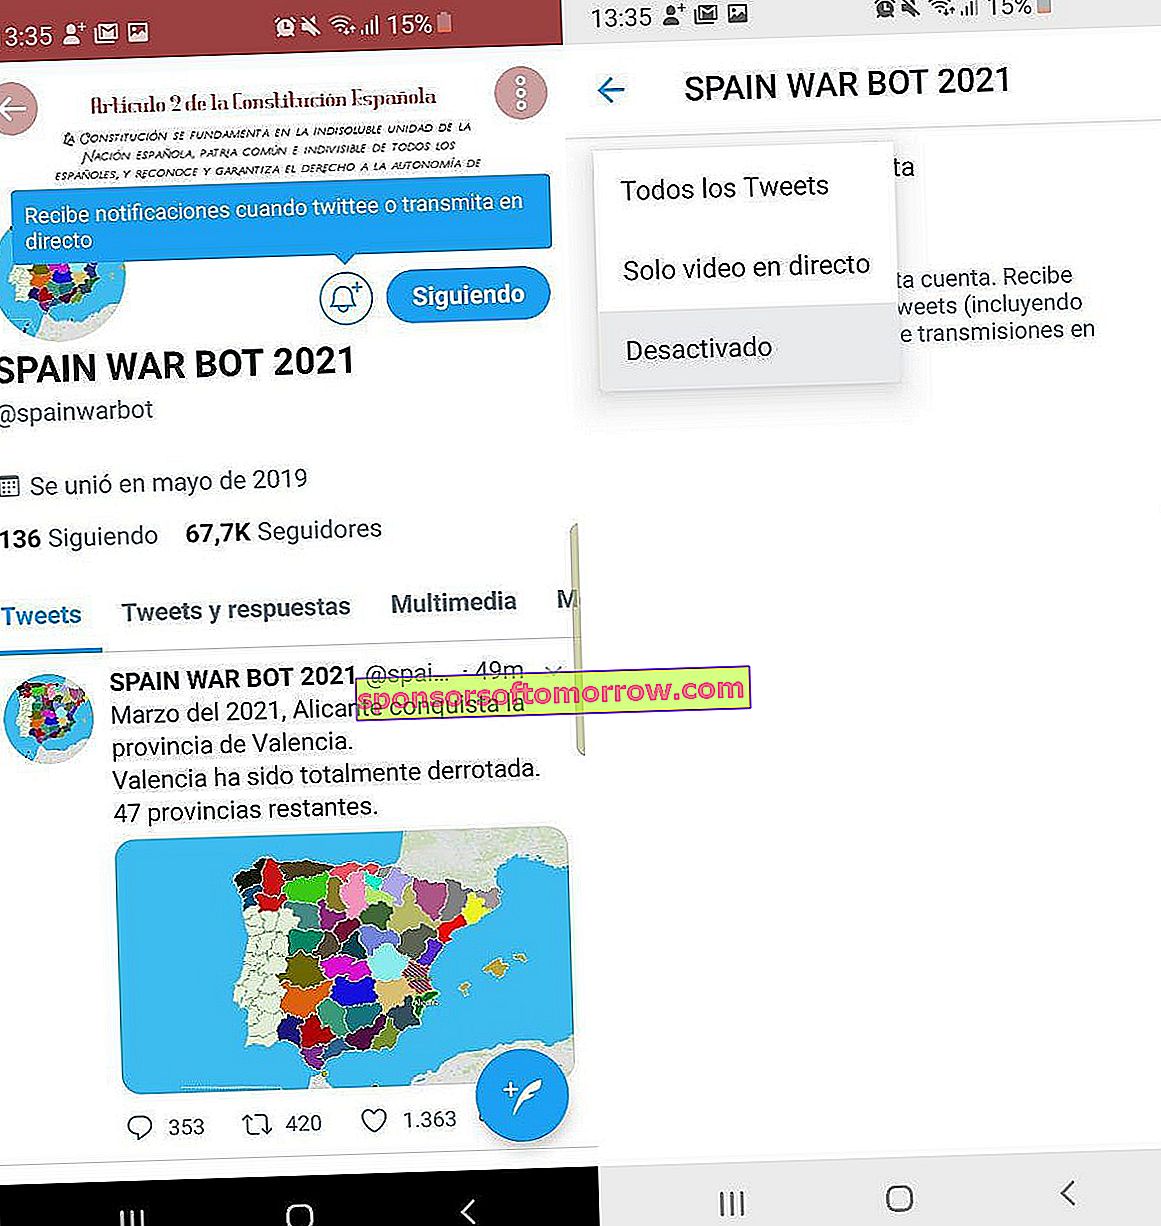 spain war bot twitter war espana risk